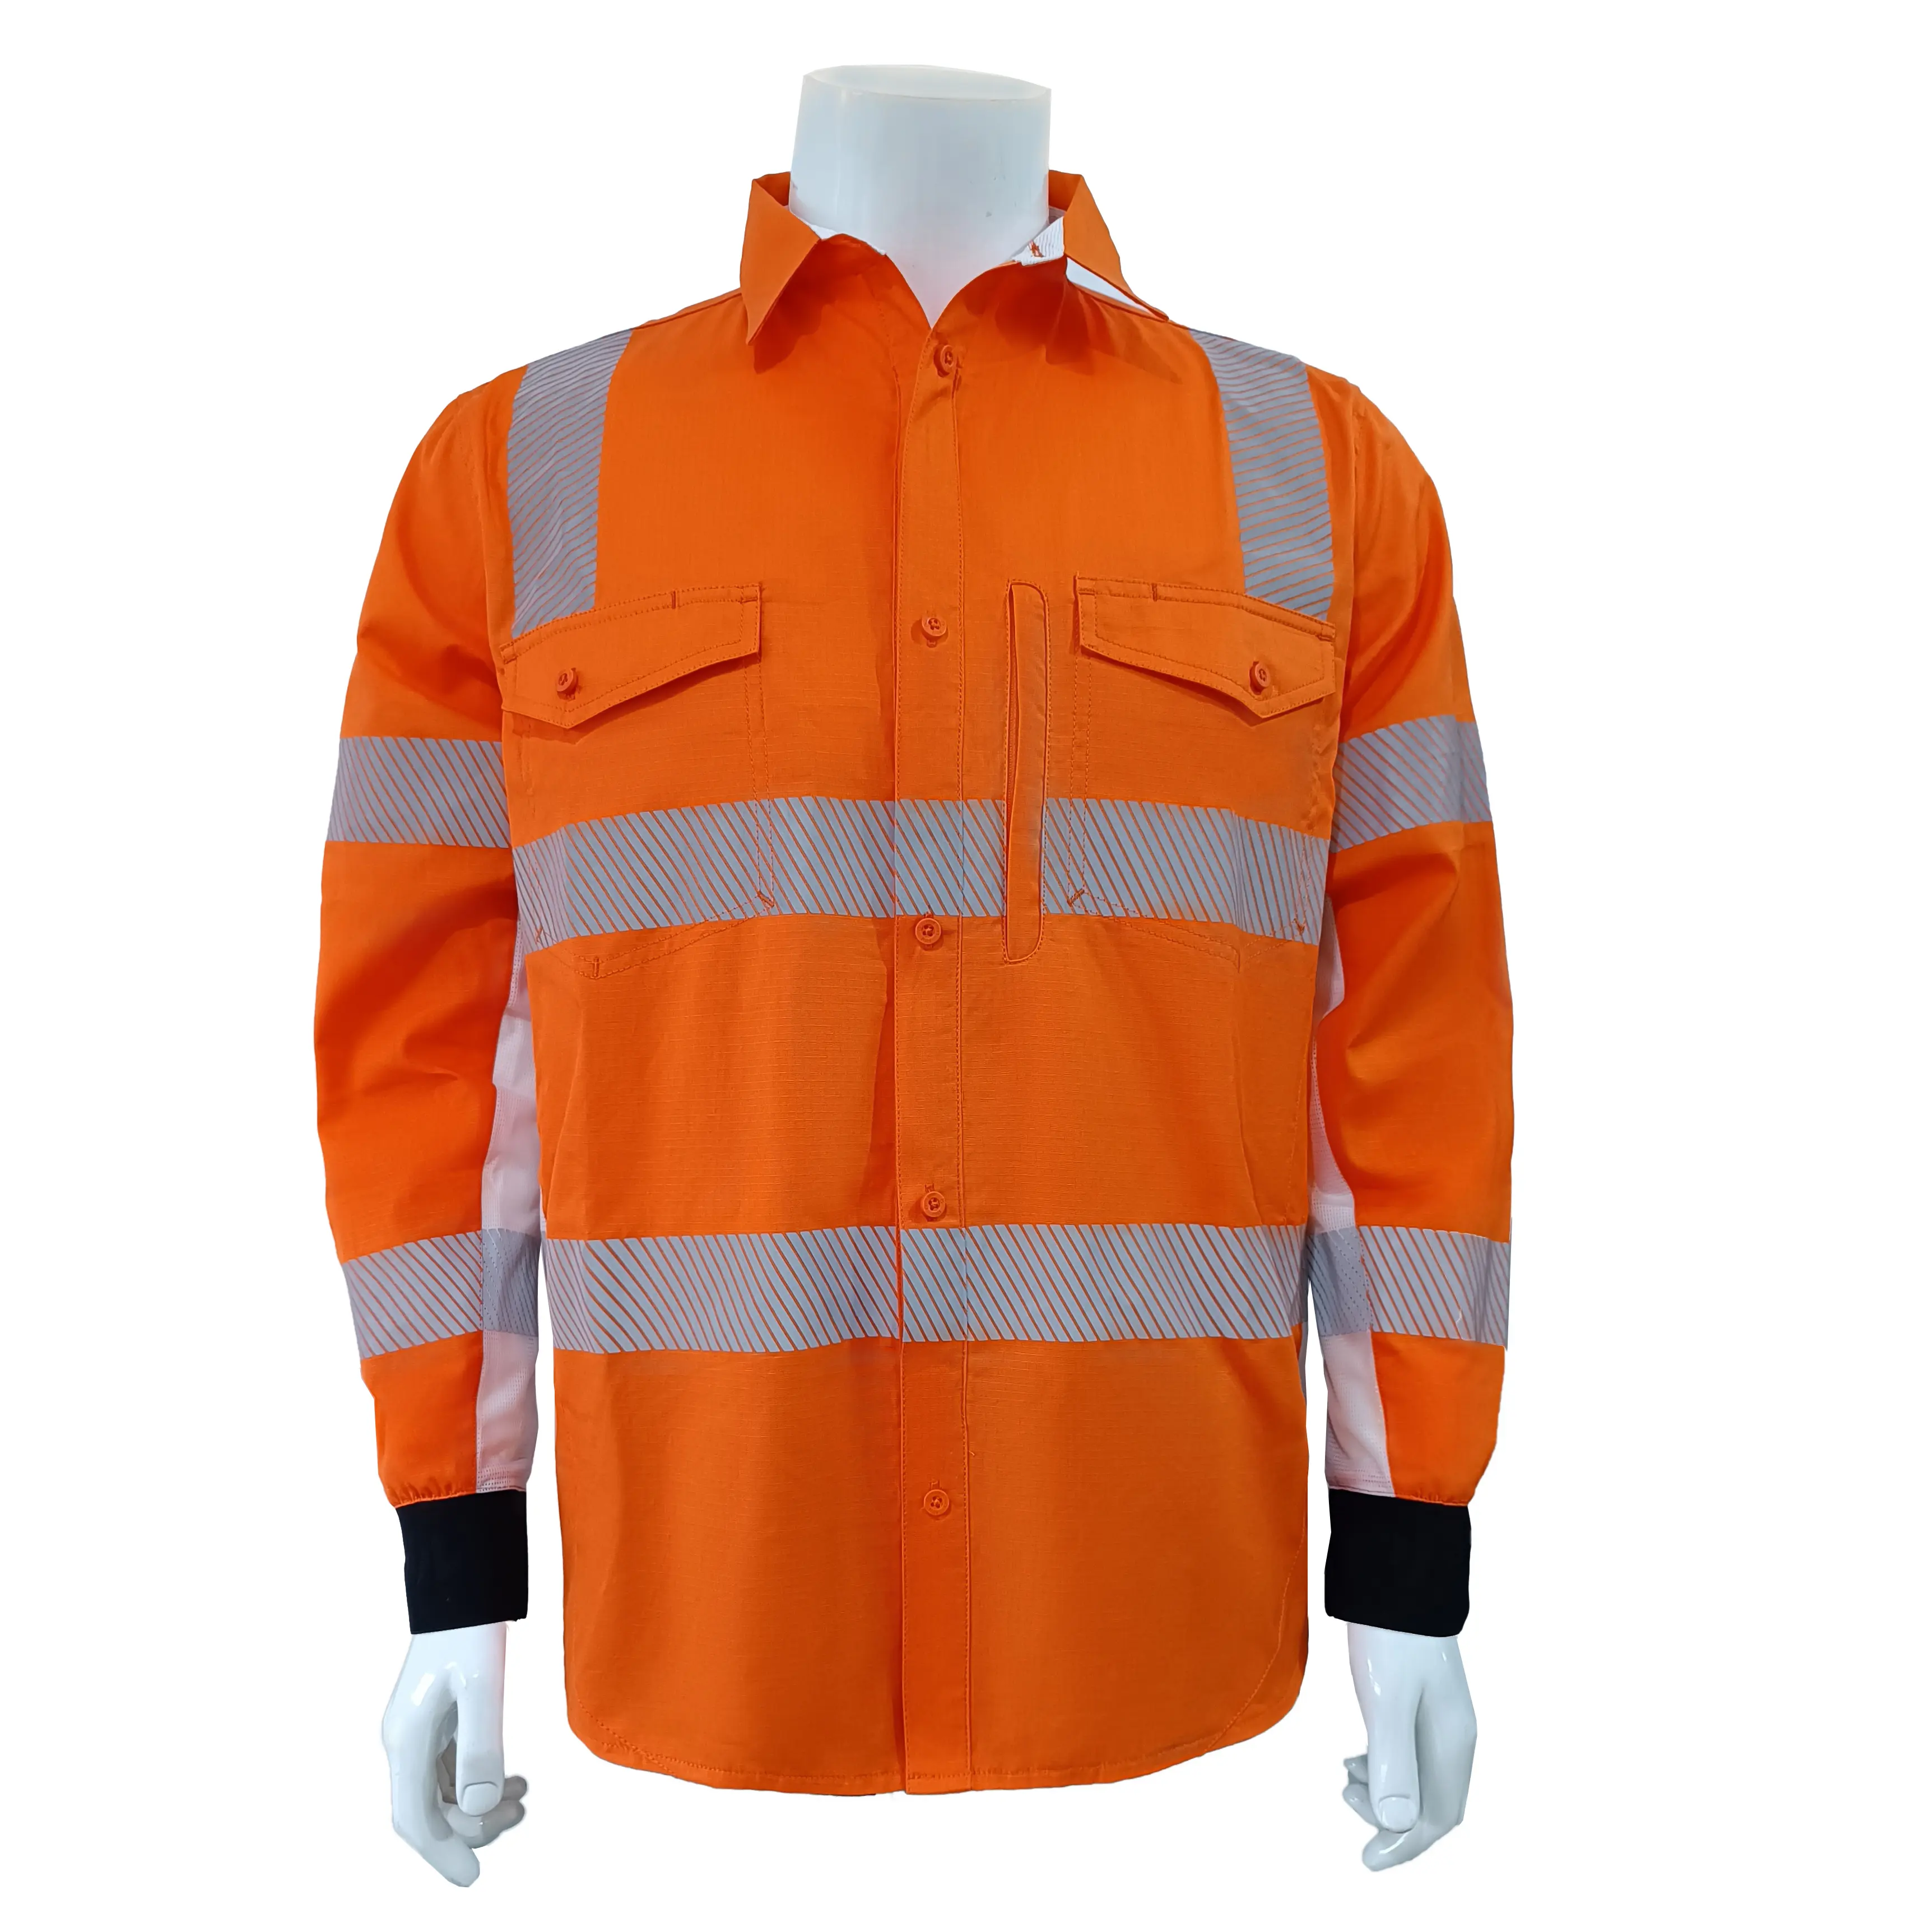 निर्माण कार्य-शर्ट के साथ जिपर प्लेकेट वर्क शर्ट, लंबी आस्तीन के साथ काम की शर्ट पुरुषों के लिए चिंतनशील शर्ट पहनते हैं।